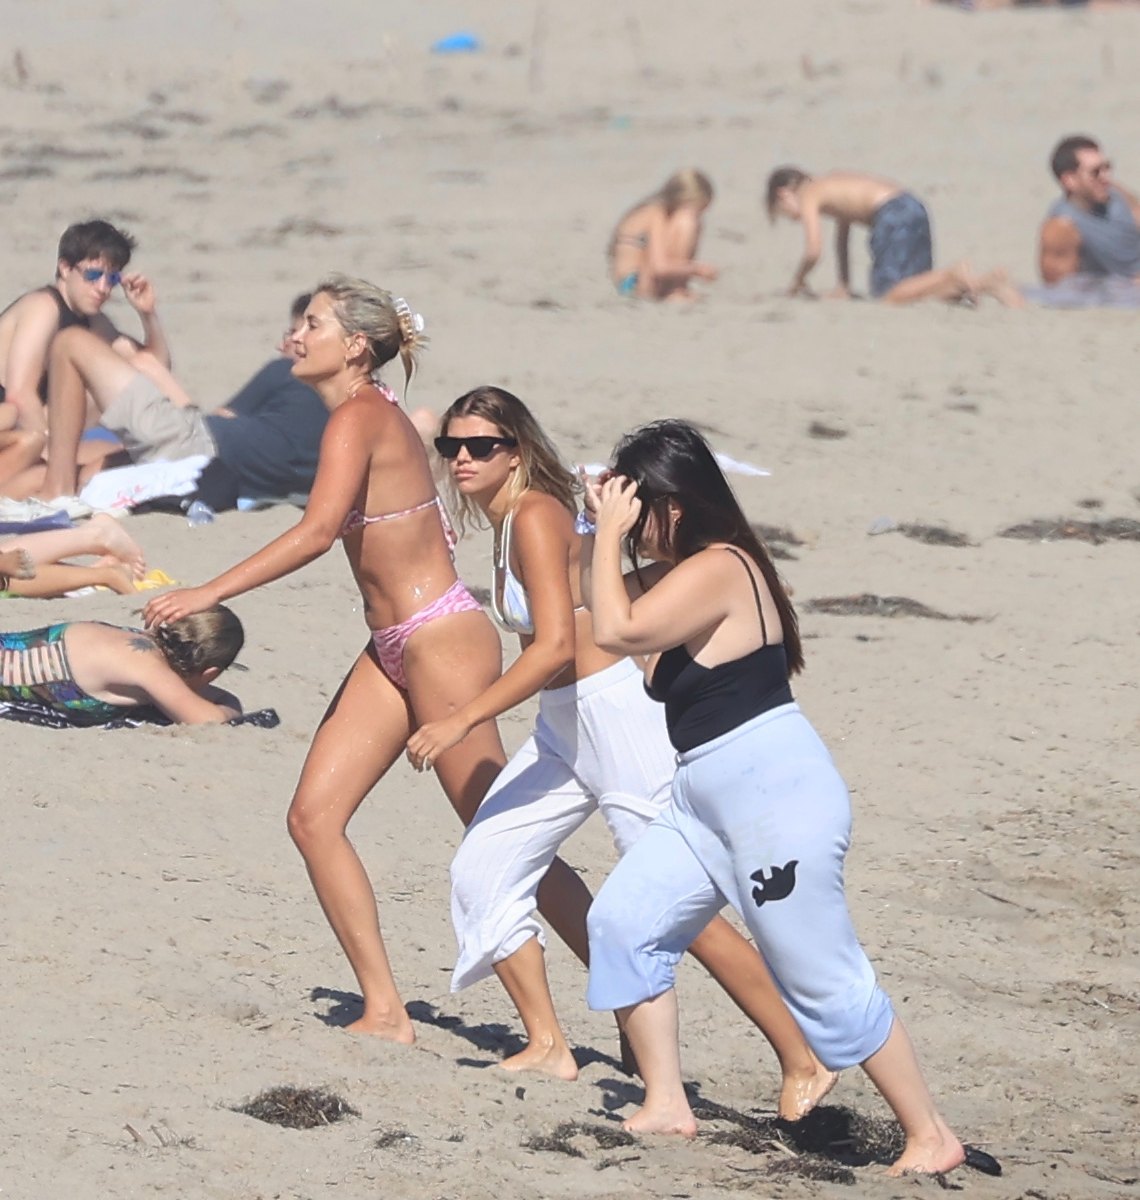 1140px x 1200px - Sofia Richie Flaunts Bikini Body During Beach Day With Friends